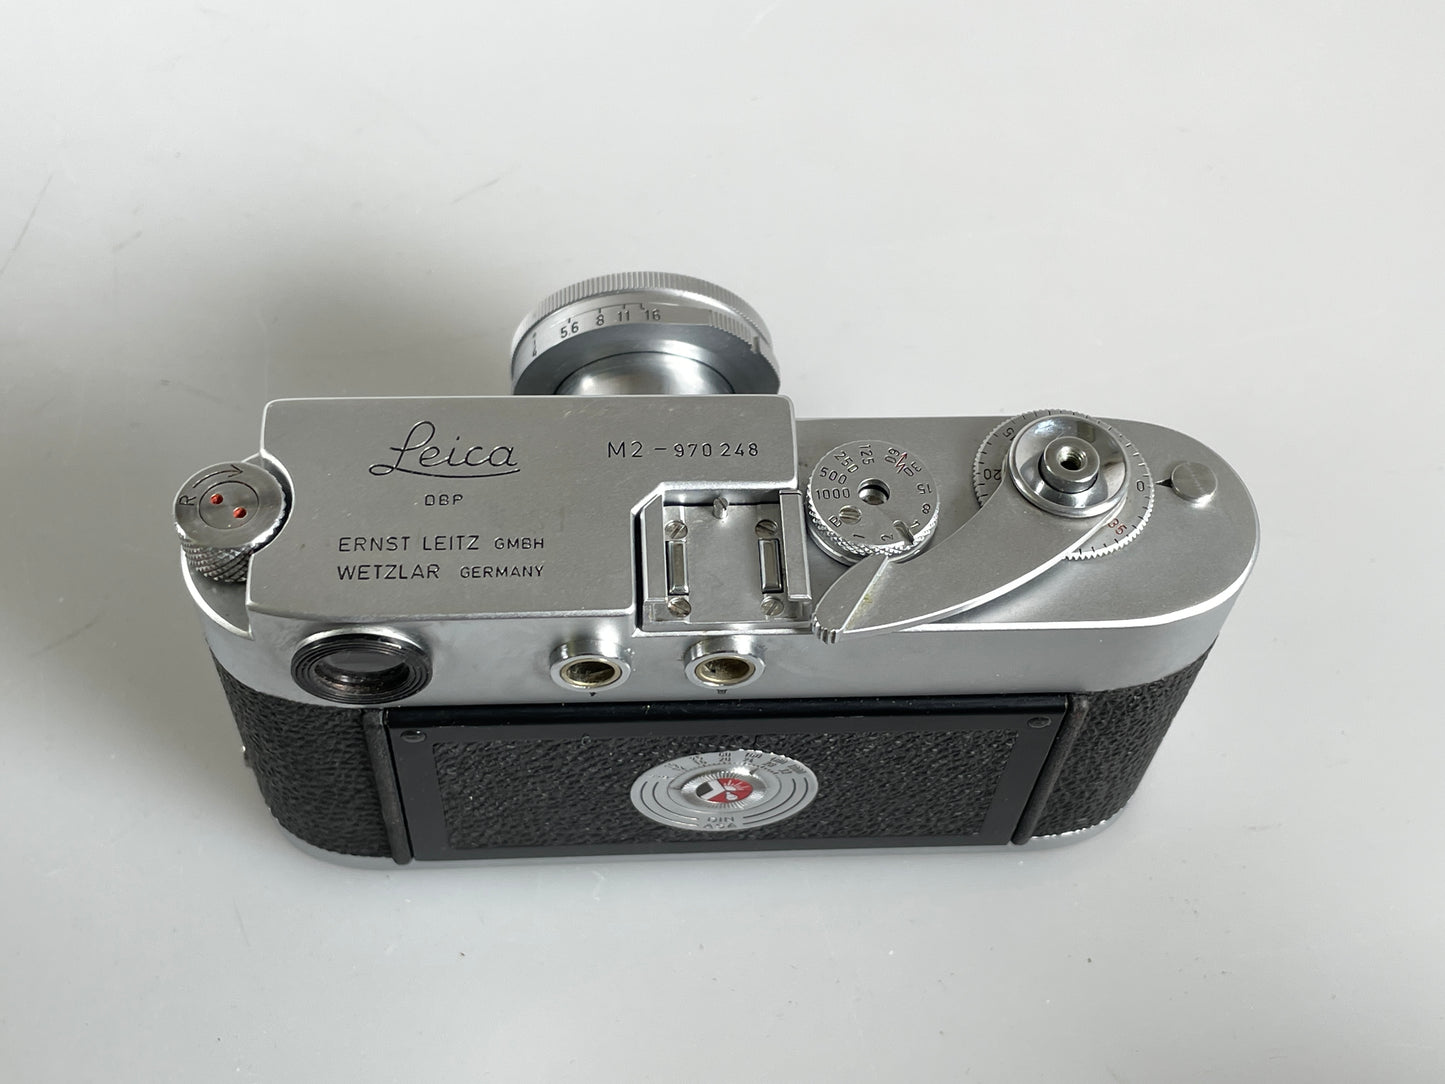 Leica M2 35mm rangefinder body button rewind with 5cm f2.8 elmar matching SN box